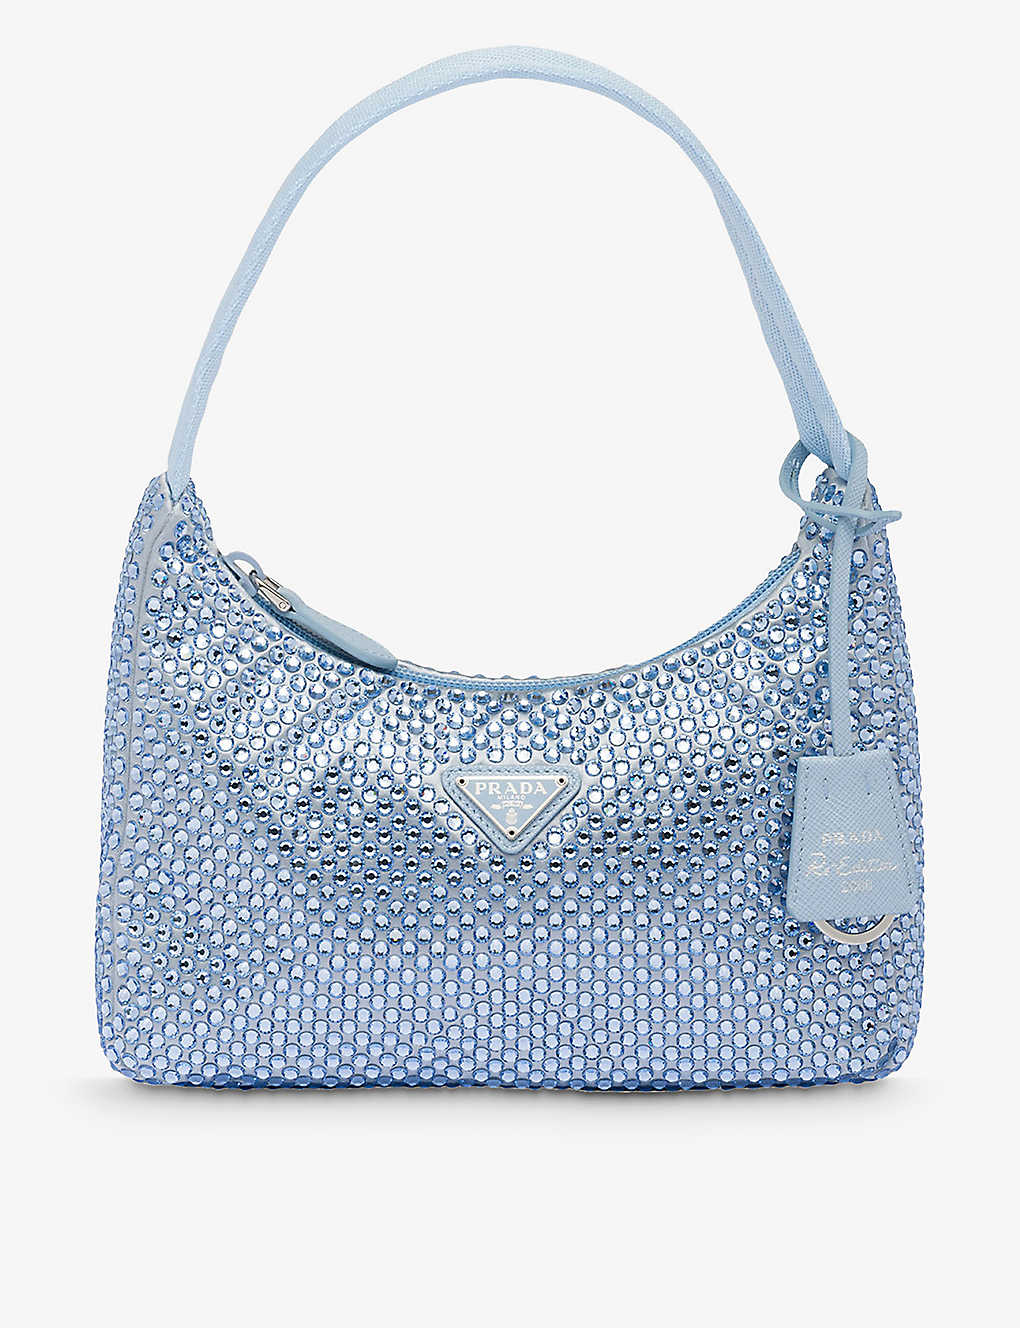 Prada Womens Light Blue Crystal-embellished Satin Shoulder Bag